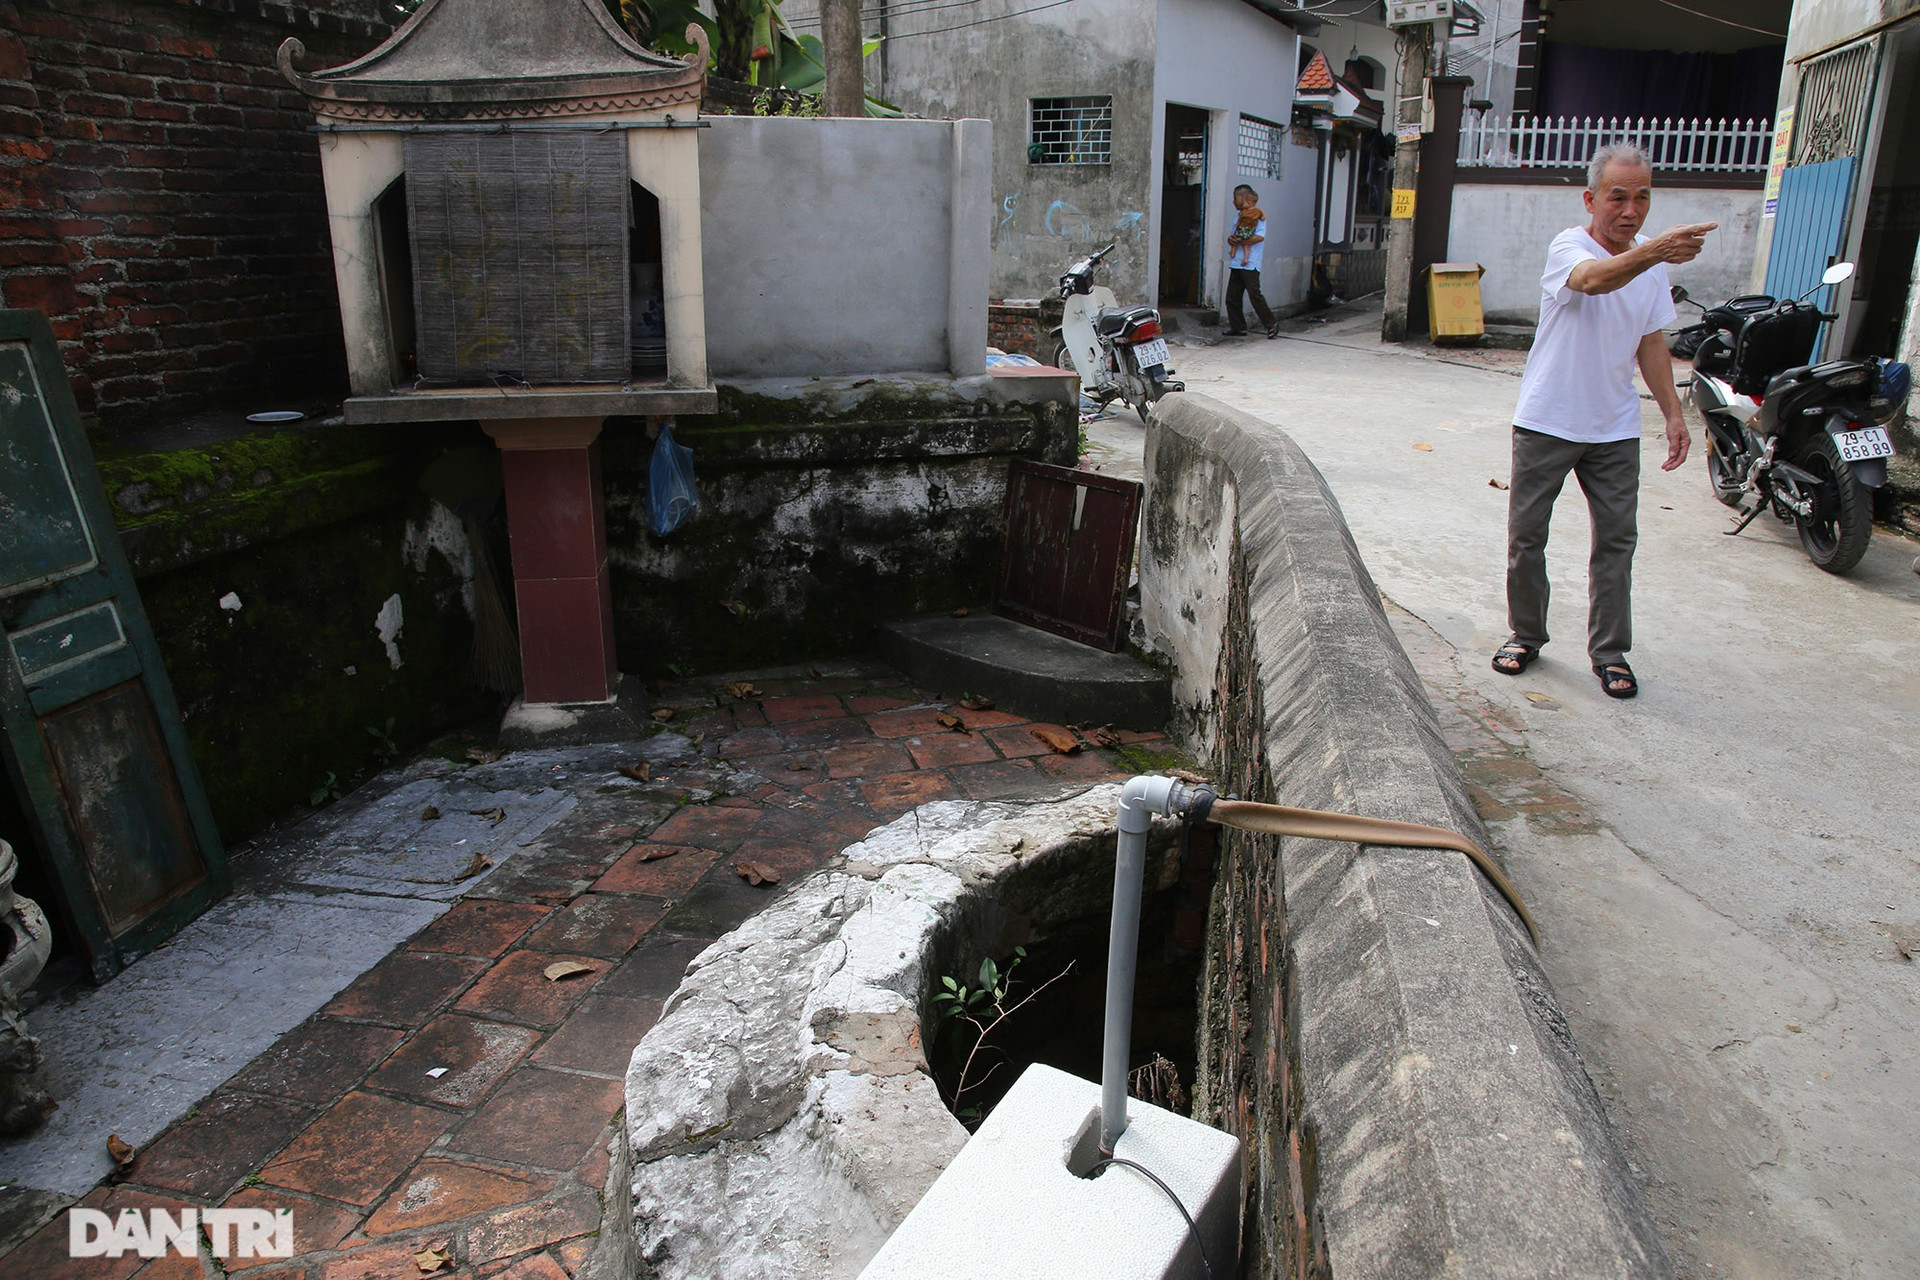 Một chiếc giếng ở xóm An Ninh nằm giữa đường đã được người dân xây che lại một nửa phần miệng giếng để lấy lối đi trở thành chiếc giếng hình bán nguyệt. Bên dưới, lòng giếng giữ nguyên và được các gia đình lấy nước sử dụng bằng máy bơm.